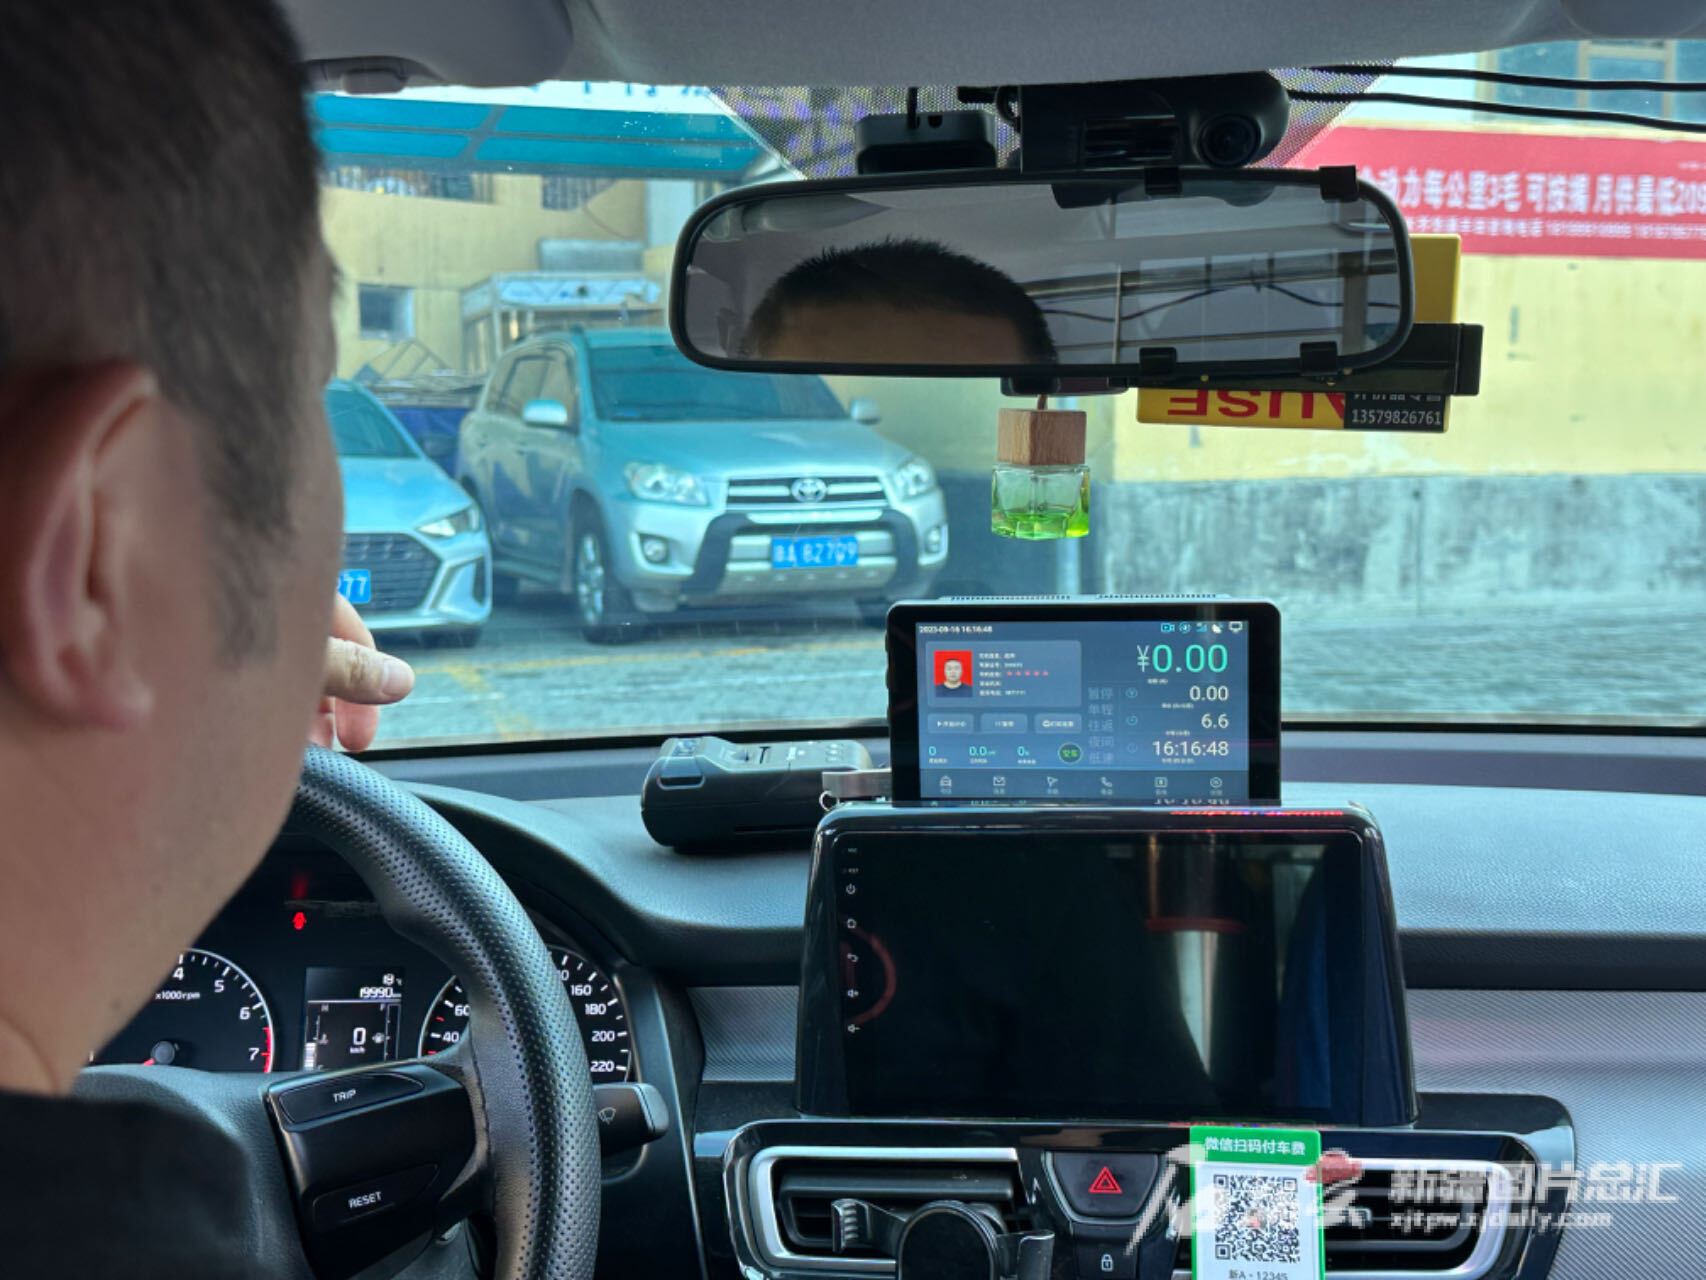 乌鲁木齐出租车计价器升级换新 电子屏显示一目了然